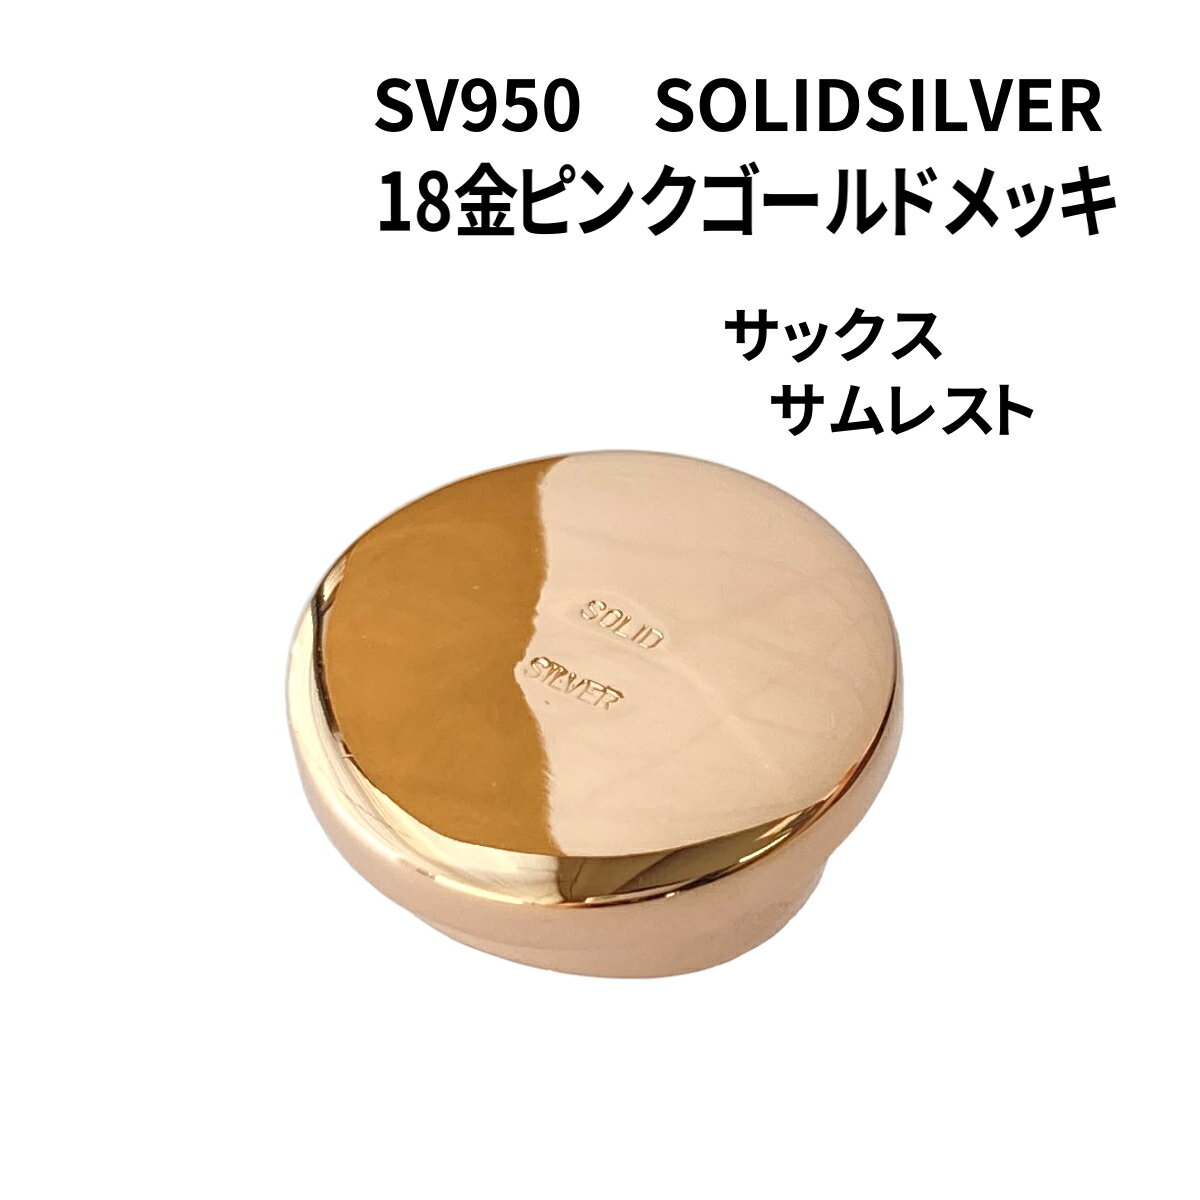 SOLID SILVER(SV950) サックス サムレスト 18金ピンクゴールドメッキ仕上げ メーカー名 EARRS（当店オリジナル商品） 日本製 適合タイプ アルト・テナー用 素　材 銀製(SV950) 18金ピンクゴールドメッキ 『SOLID SILVER』刻印入 重　量 約7.3g サイズ 直径　23mm 高さ　10mm 台座部分の内径　16.9mm 台座部分の高さ　6.4mm 特　徴 当店オリジナル、ハンドメイドのサックス用 銀製サムレストです。 EARRS銀製サムレストに換えることによって、サックス本体のポテンシャルを引き出し、繊細な音から力強い音まで、心地よいレスポンスを感じることができます。 特に低音の表現力が豊かで、落ち着いた品のある柔らかい音になります。 さらに、18金ピンクゴールドメッキによって音に華やかさと明るさが加わります。 ピンクゴールドは割金に銅が多く含まれていることから、24金メッキよりも力強さとまとまりが感じられます。 ※音の特徴は、金属固有の特性に由来するものですが、感じ方には個人差があります。 ご注意 サムレストはサックスの機種によってサイズが合わない（フィットしない）ものもございます。 キャノンボールは台座の形状が異なるため合いません。 また、交換の際、元のサムレストが本体に接着されている場合は、ご自分では外せないケースもあり得ます。 その場合はリペア業者様等の専門の方にご依頼ください。 お買い上げのこちらの商品が合わなかった場合は、返品・返金の対応をさせていただきます。